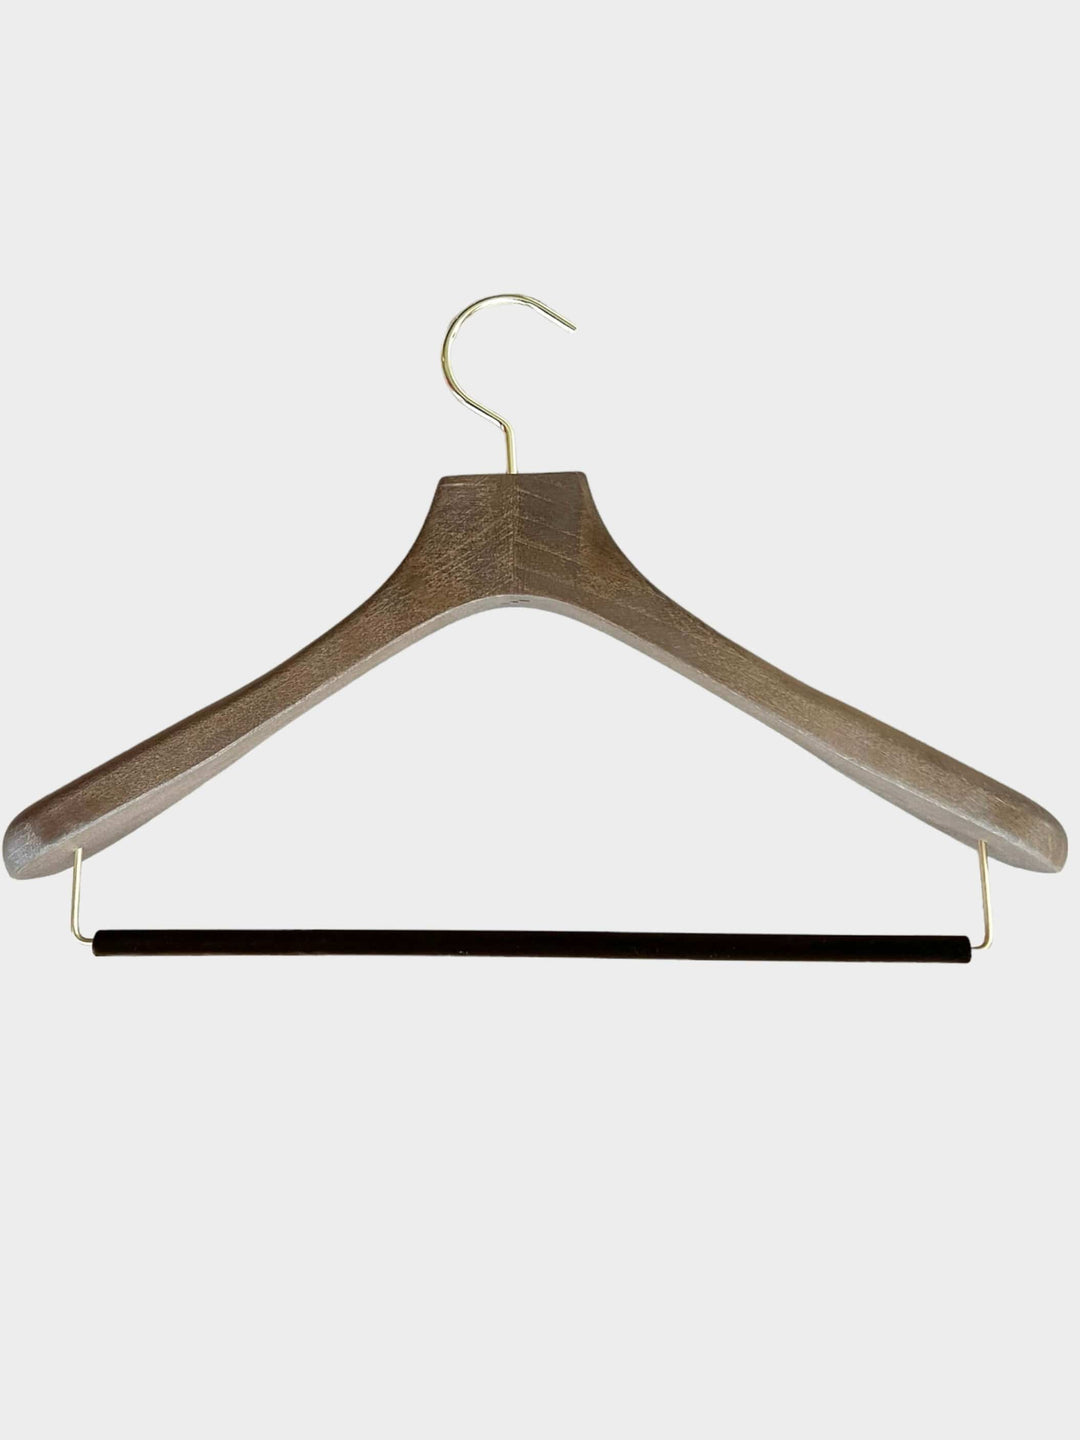 Medium Weight Wooden Hanger